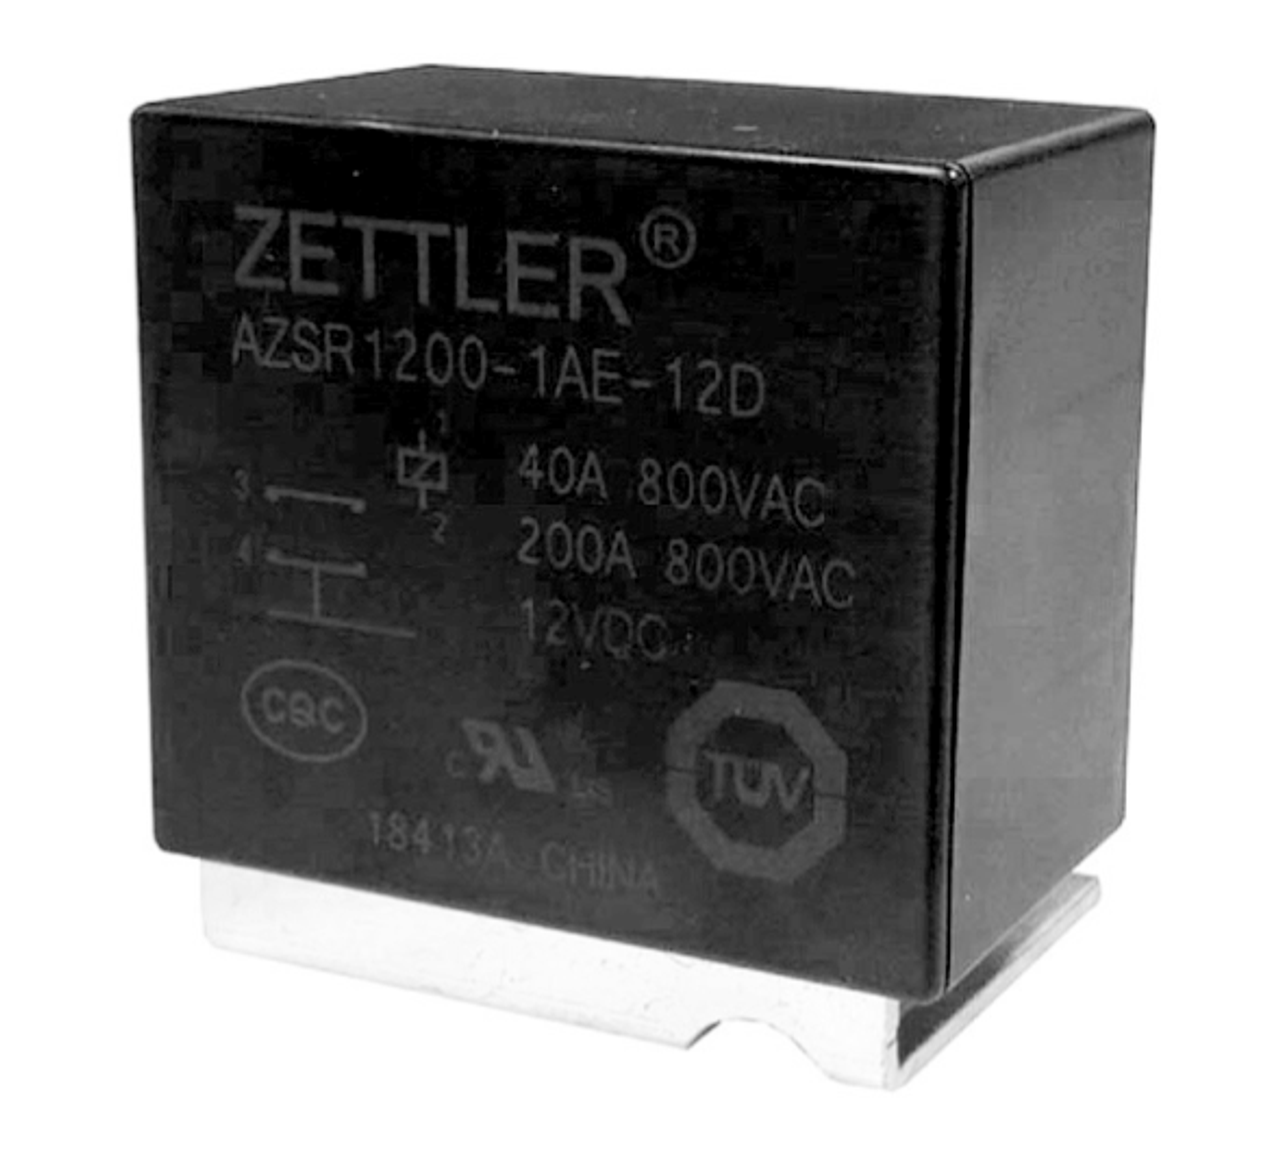 American Zettler AZSR1200-1AE-6D Power Relay